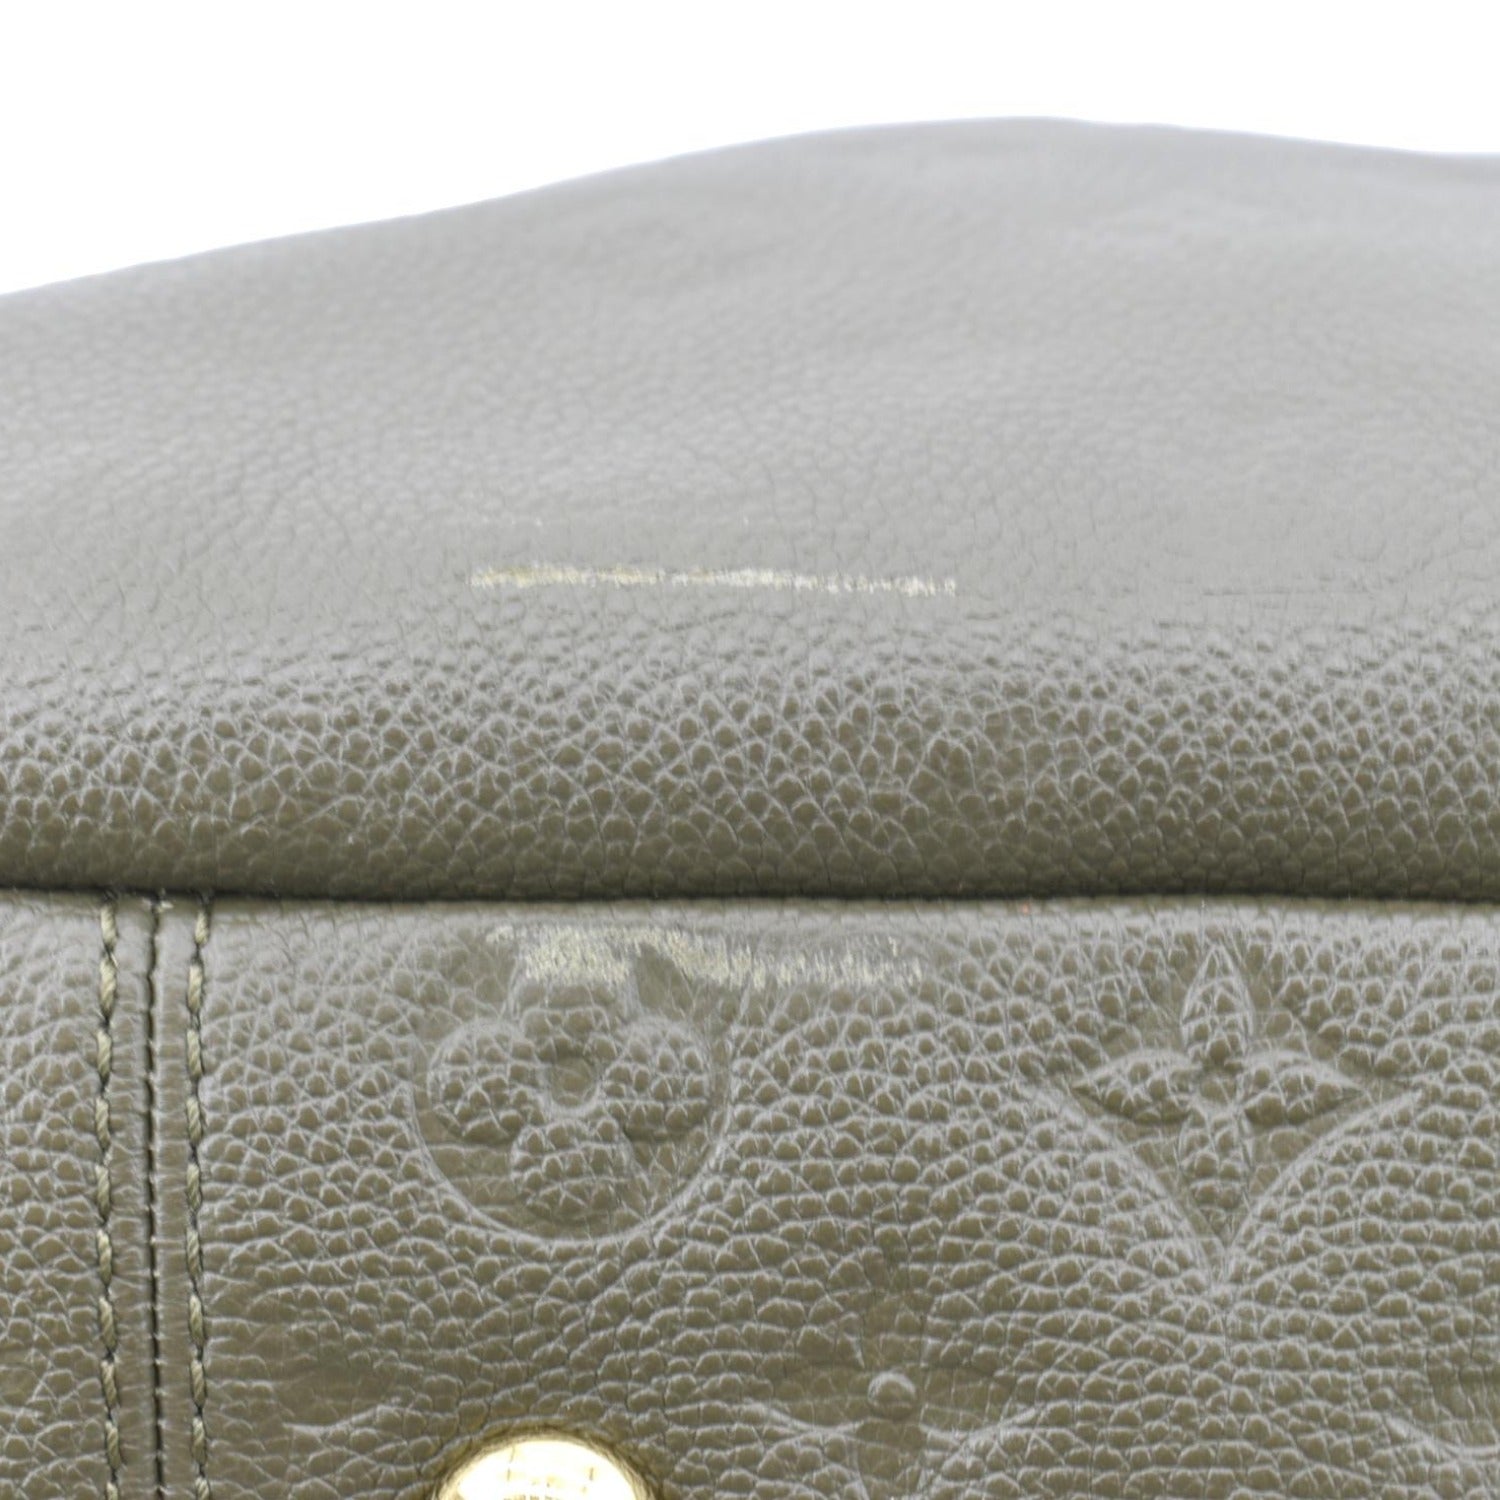 LOUIS VUITTON Artsy MM Monogram Empreinte Leather Shoulder Bag Khaki G